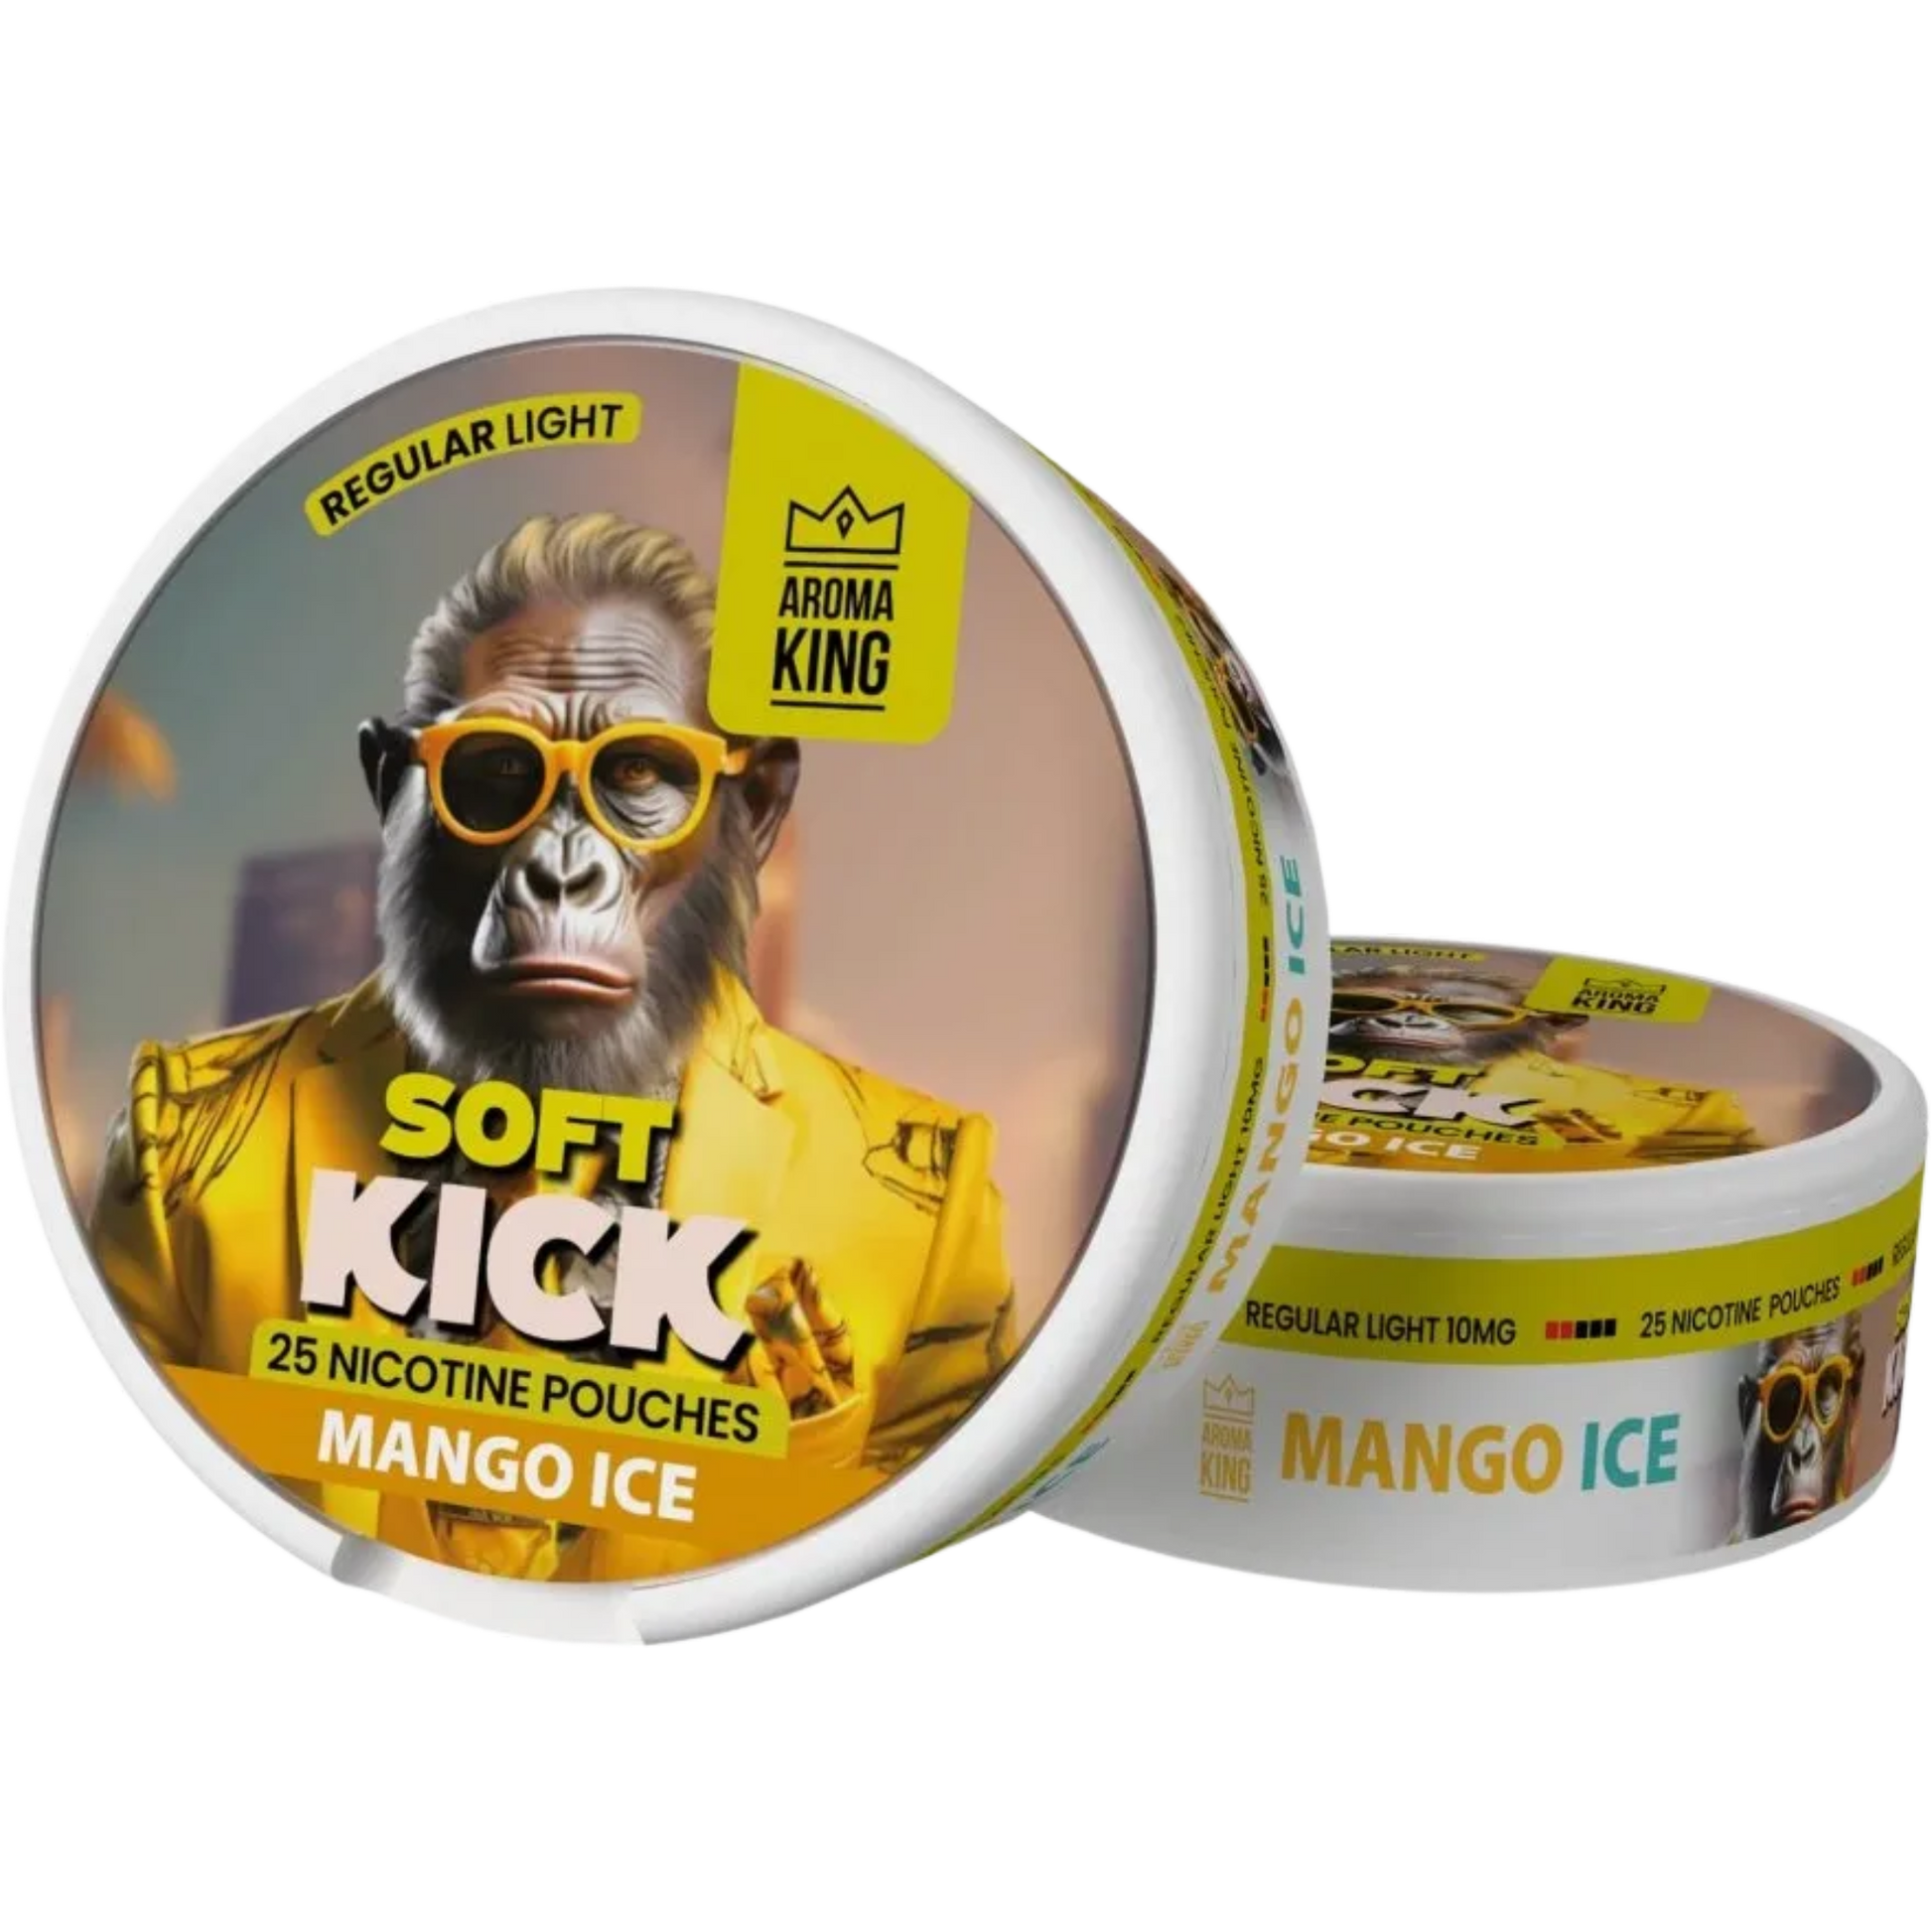 Aroma King Soft Kick Mango Ice - 10mg